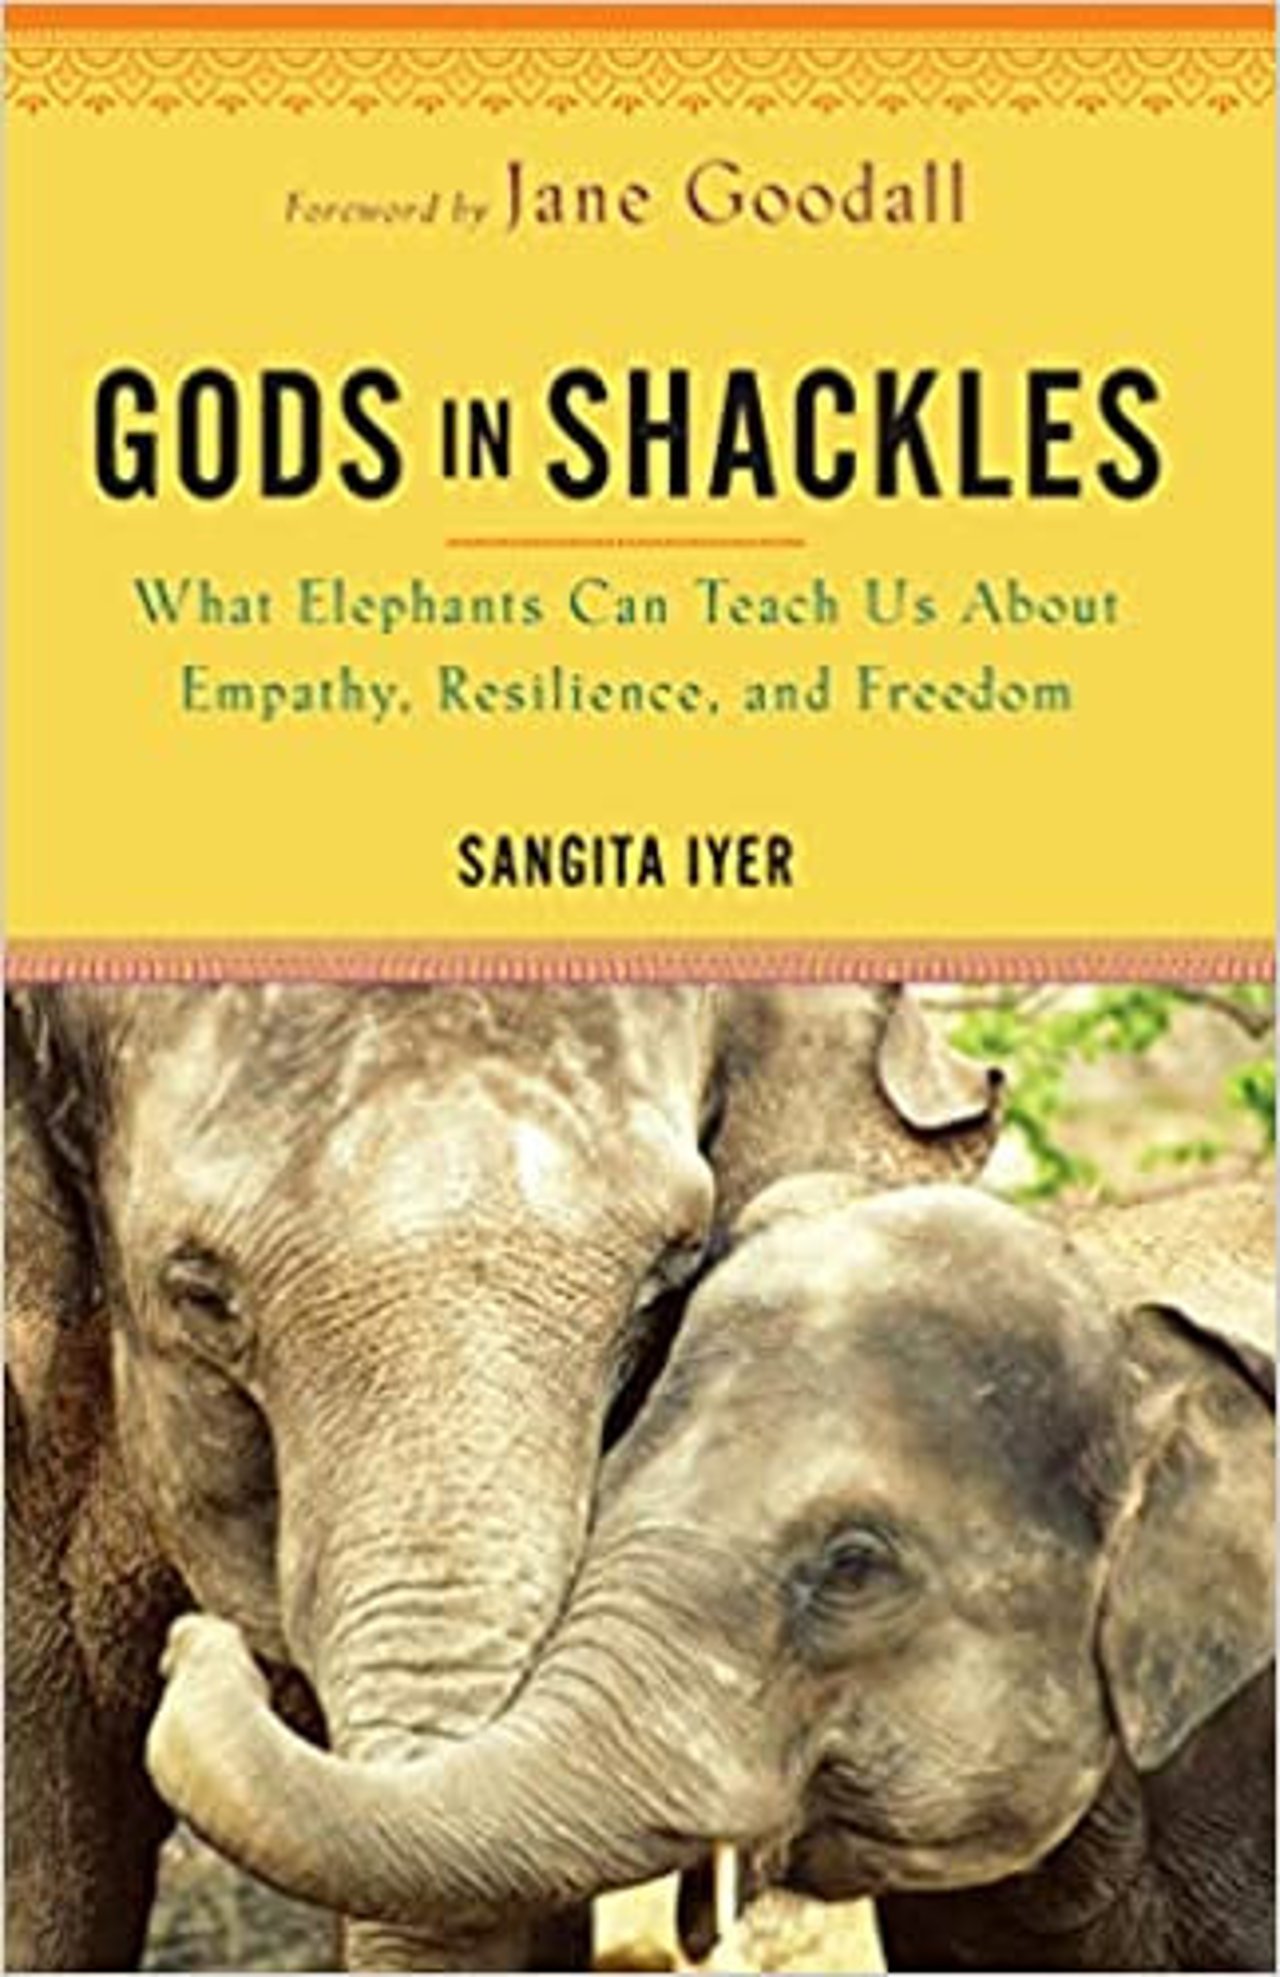 Gods in shackles by Sangita Iyer 